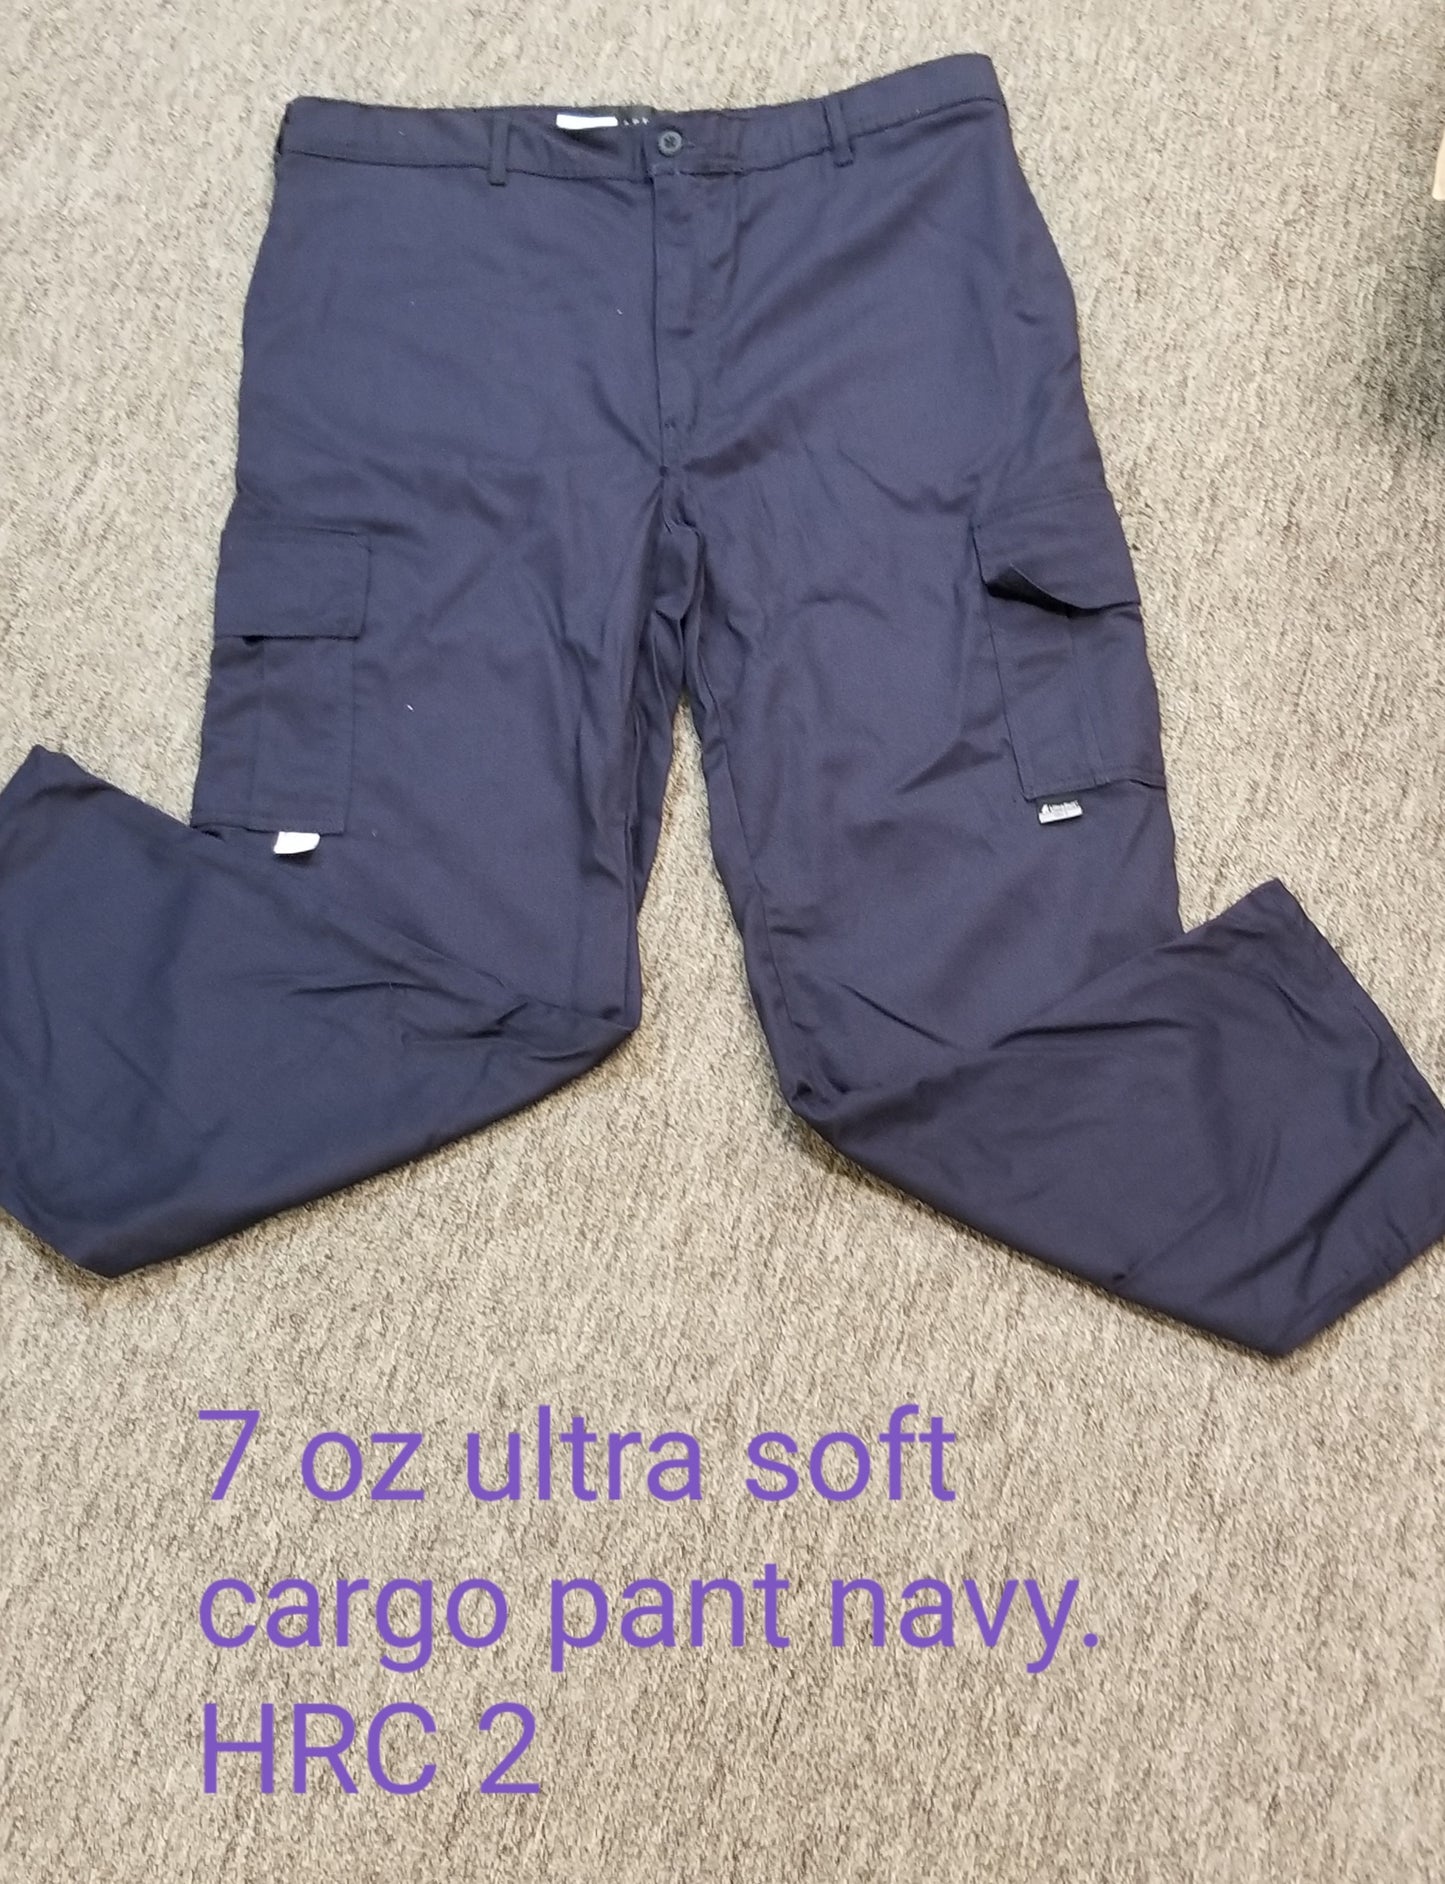 FR Cargo Pants - 7 oz Navy